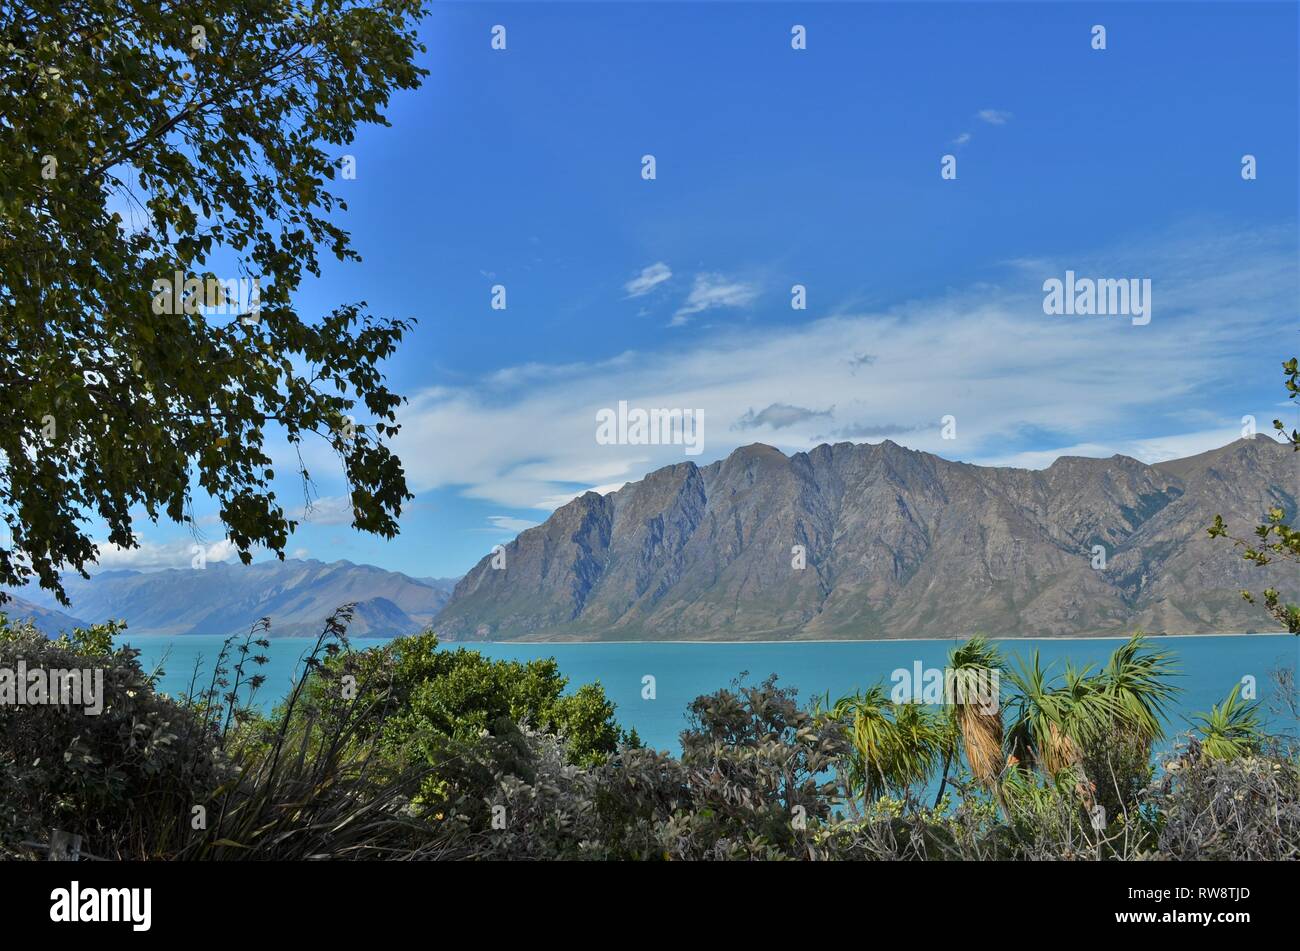 beautiful scenery at blue Lake Hawea with mountains near Wanaka, New Zealand Stock Photo